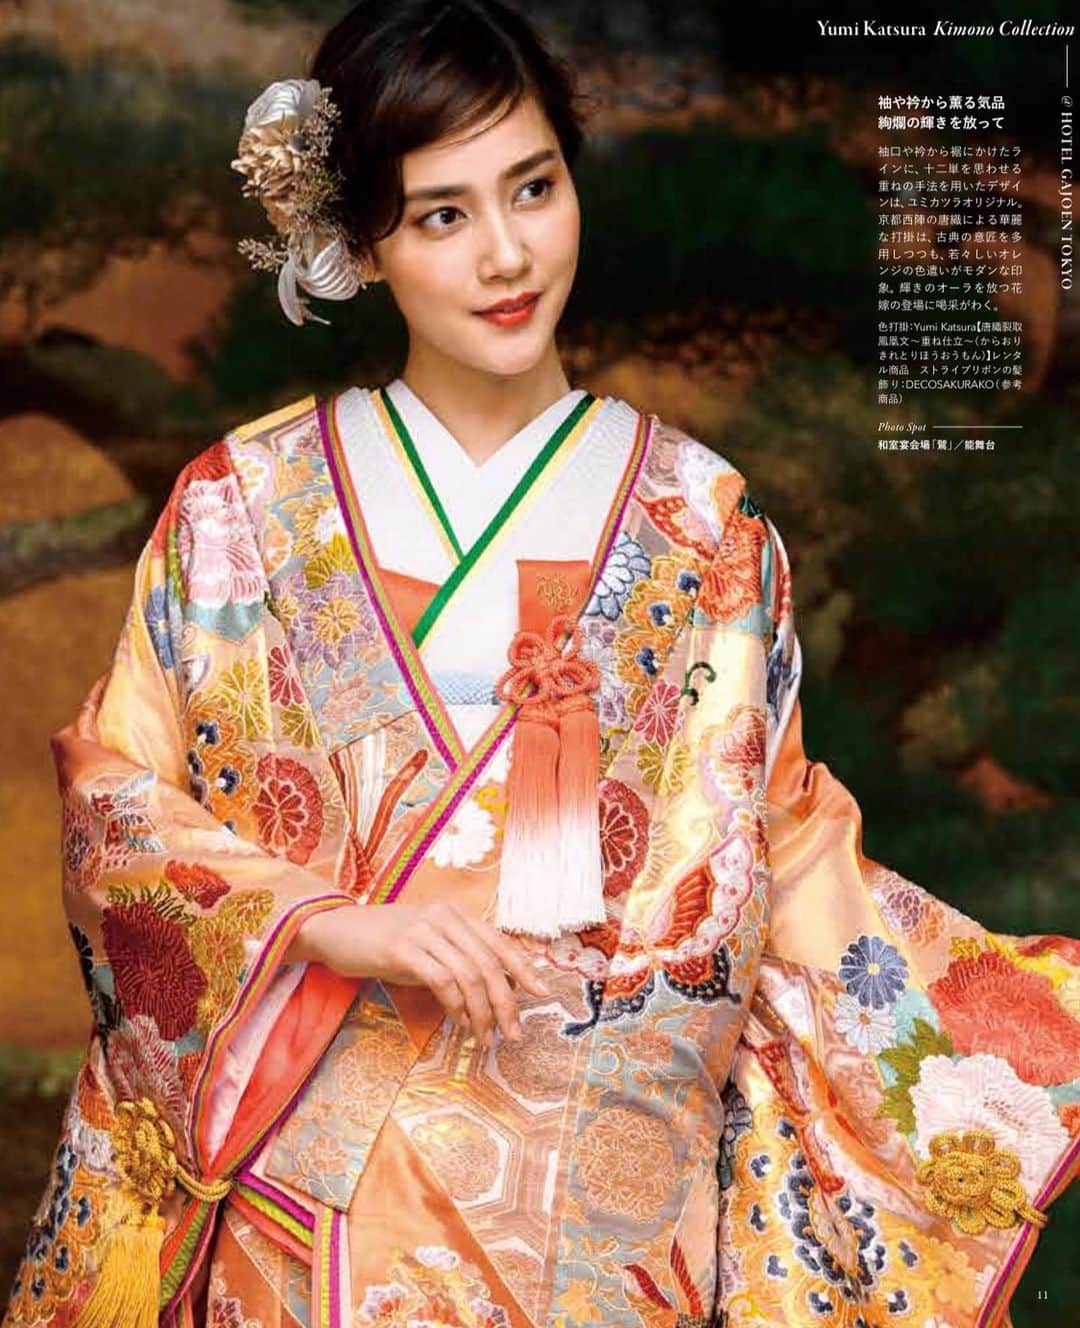 yumikatsuraのインスタグラム：「* ﻿﻿﻿﻿﻿﻿﻿﻿ ﻿袖や衿から薫る気品、絢爛の輝きを放って♡﻿ ﻿﻿﻿ 8月5日発売✨﻿﻿﻿﻿﻿ 「日本の結婚式32号」にYumi Katsura Kimono Collectionが特別付録として紹介されています。﻿﻿﻿﻿﻿ ____________________________﻿﻿﻿﻿﻿﻿﻿﻿﻿﻿﻿﻿﻿﻿ ﻿ 袖口や衿から裾にかけたラインに、十二単を思わせる重ねの手法を用いたデザインは、ユミカツラオリジナル。 京都西陣の唐織による華麗な打掛は、古典の意匠を多 用しつつも、若々しいオレンジの色遣いがモダンな印象。輝きのオーラを放つ花嫁の登場に喝采がわく。﻿ ﻿ (「日本の結婚式32号」より)﻿﻿﻿ ____________________________﻿﻿﻿﻿﻿﻿﻿﻿﻿﻿﻿﻿﻿﻿ ﻿﻿﻿ 毎週火曜日18:30〜﻿﻿ デザイナー桂由美によるインスタライブ開催中💐﻿﻿ 是非ご覧くださいね✨﻿﻿ ﻿ .﻿﻿﻿﻿﻿﻿﻿﻿﻿﻿﻿﻿﻿﻿﻿﻿﻿﻿﻿﻿﻿﻿﻿﻿﻿﻿ ﻿﻿﻿﻿﻿﻿﻿﻿ @yumikatsurajapan﻿﻿﻿﻿﻿﻿﻿﻿﻿﻿﻿﻿ @yumikatsura_kimomo﻿﻿﻿﻿﻿ @nihonno_kekkonshiki﻿﻿﻿﻿﻿ #日本の結婚式 #神前式 #神社婚 #和装結婚式 #和婚をもっと盛り上げたい #和の結婚式 ﻿﻿﻿﻿﻿ #前撮り#ロケーションフォト #ロケーションフォトウェディング #ロケフォト #プレ花嫁準備 #プレ花嫁2020 #フォトウエディング #ウエディングフォト #桂由美 #yumibrides #yumikatsura #プレ花嫁応援 #おしゃれ花嫁 #後撮り#大人花嫁 #和装前撮り #和装 #和装花嫁 #和装試着 #色打掛 #色打掛前撮り #色打掛試着 #色打掛選び #和婚花嫁さんと繋がりたい」